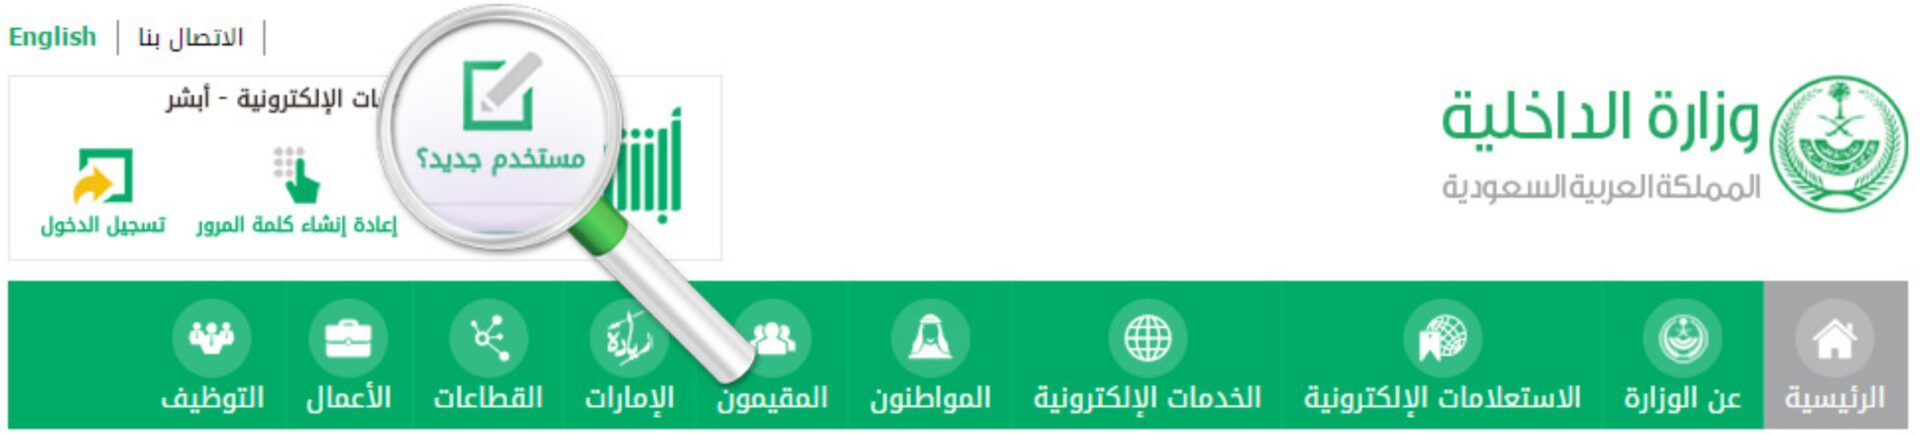 الخدمات الإلكترونية المقدمة من وزارة الداخلية السعودية ..طريقة التسجيل وكيفية التواصل